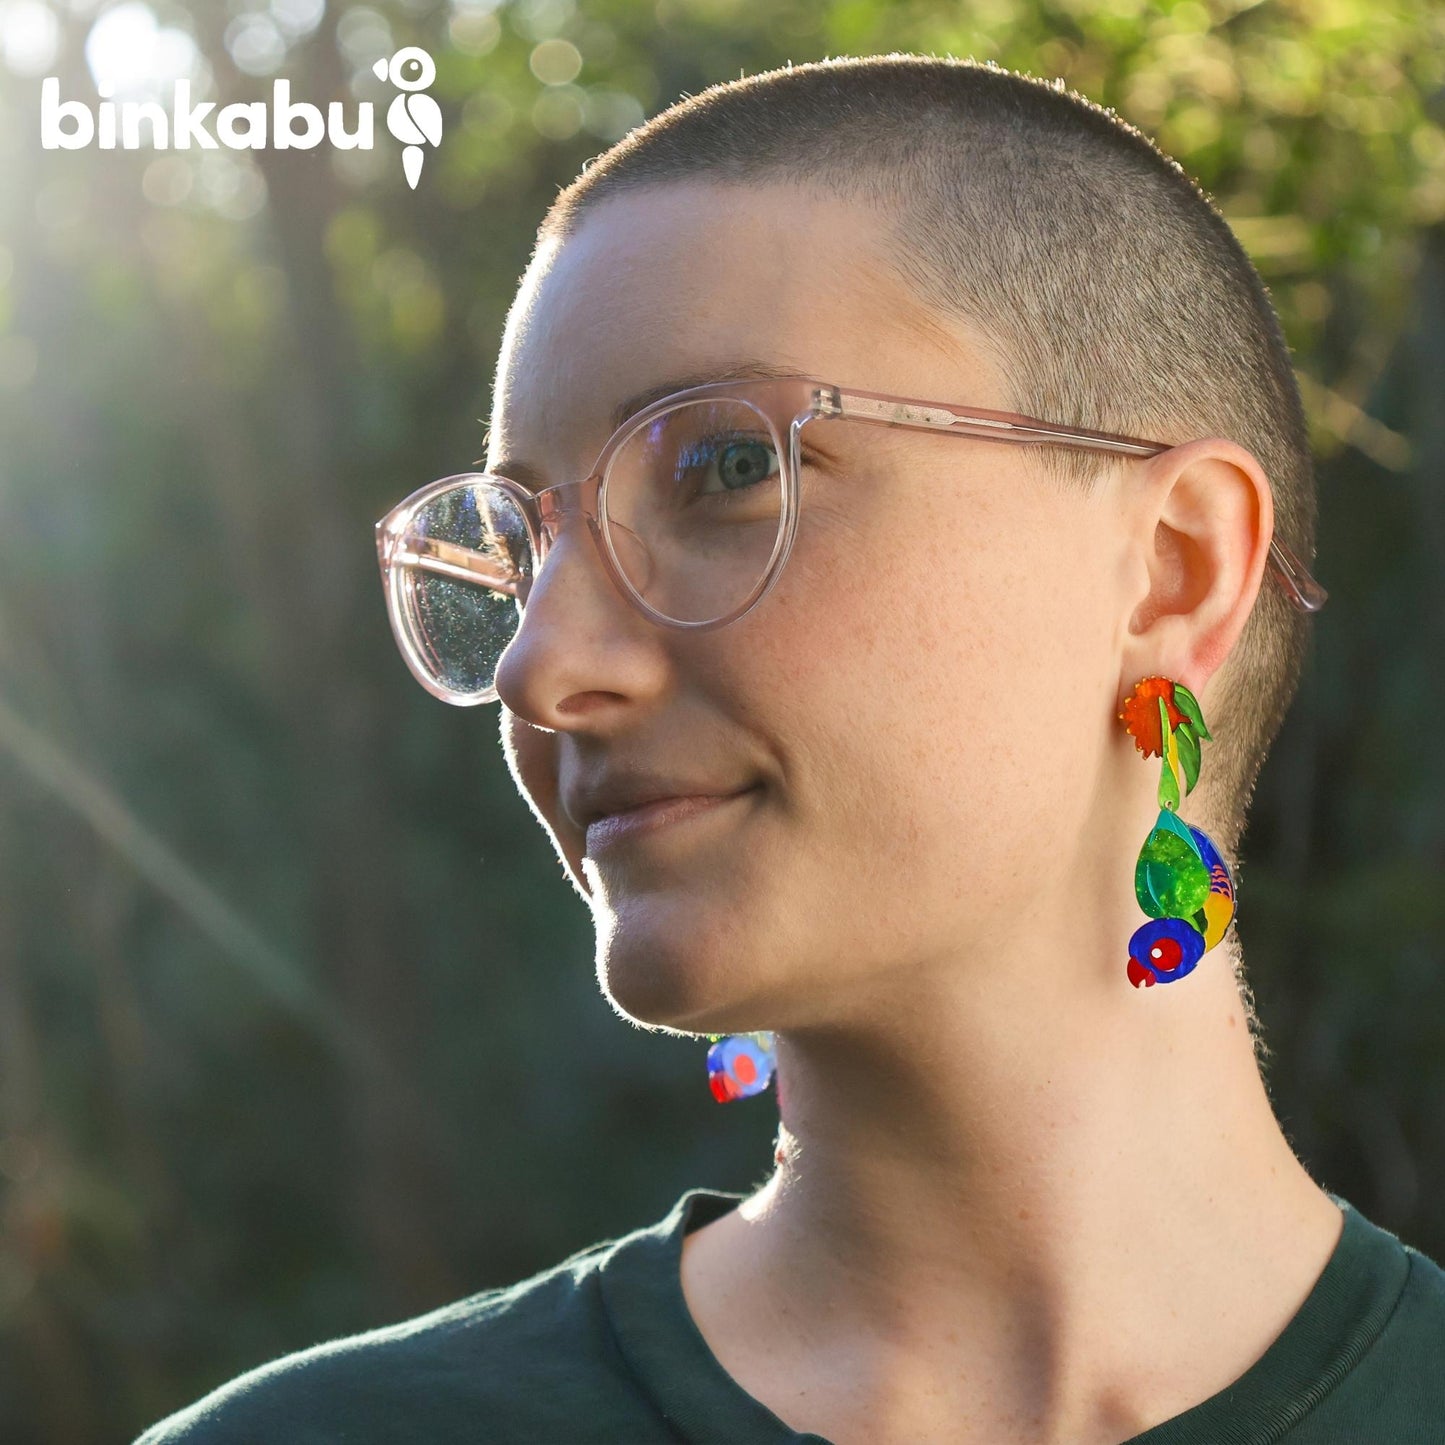 Rainbow Lorikeet Earrings - Statement Bird Earrings